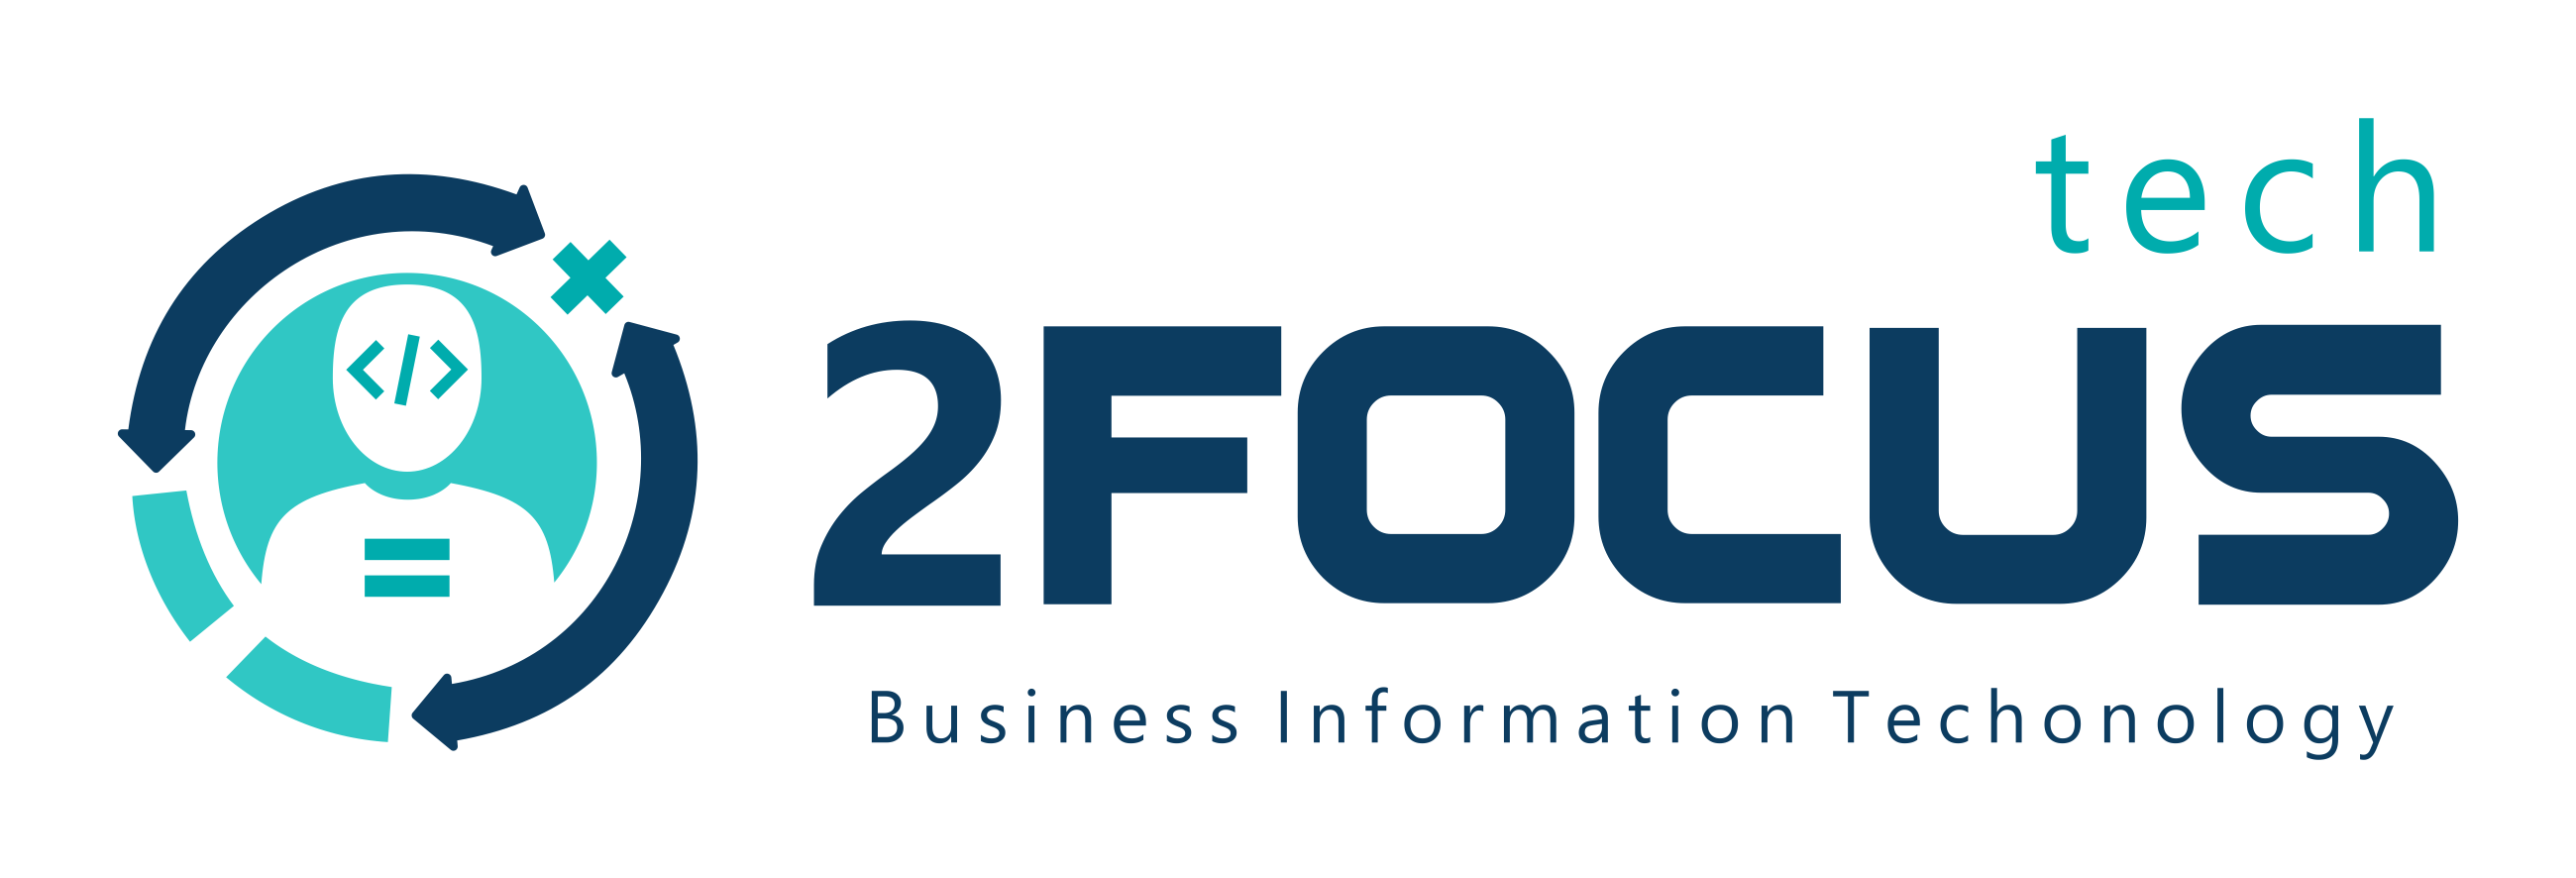 2focusplustech logotipo